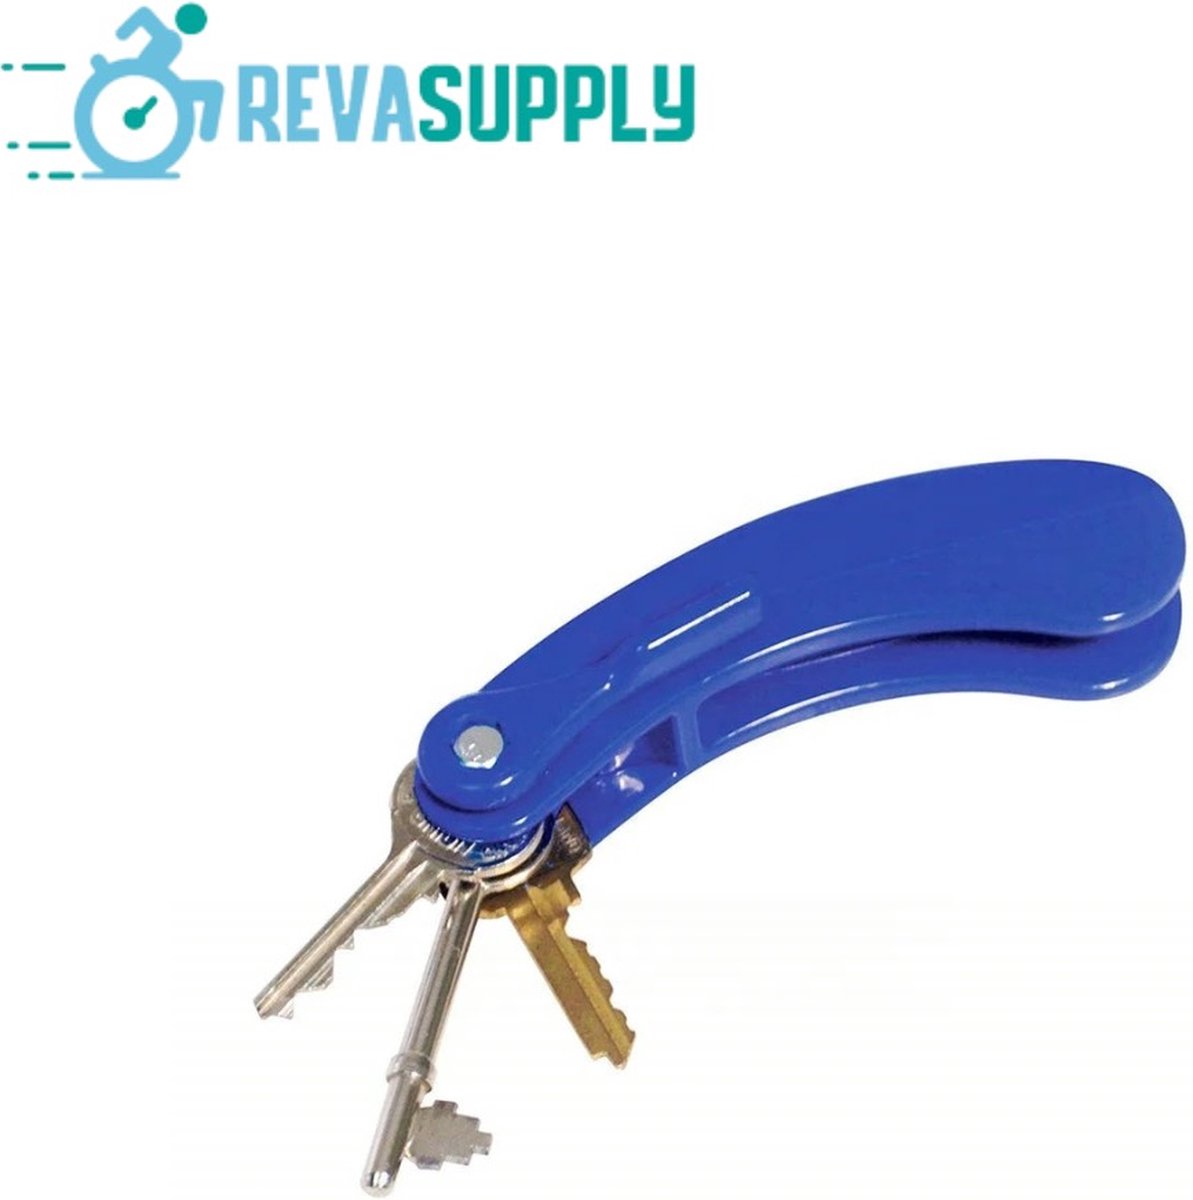 Revasupply™ - Sleuteldraaihulp - 3 Sleutels - Hulpmiddel - Bij beperkte handfunctie - Draaihulp - Reuma - Blauw